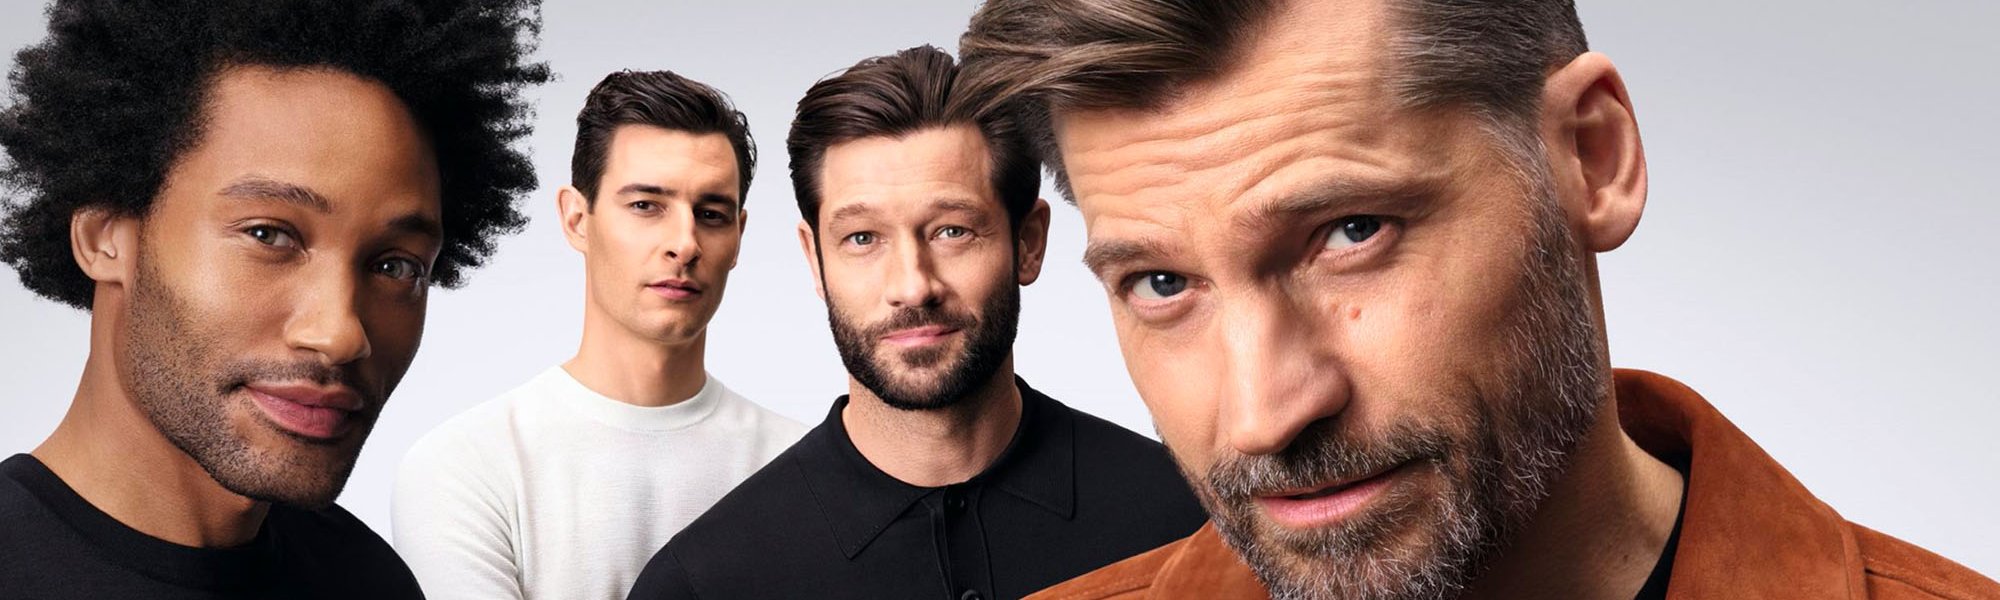 Men's Hair, Skin Care & Grooming Tips & Trends - L'Oréal Paris